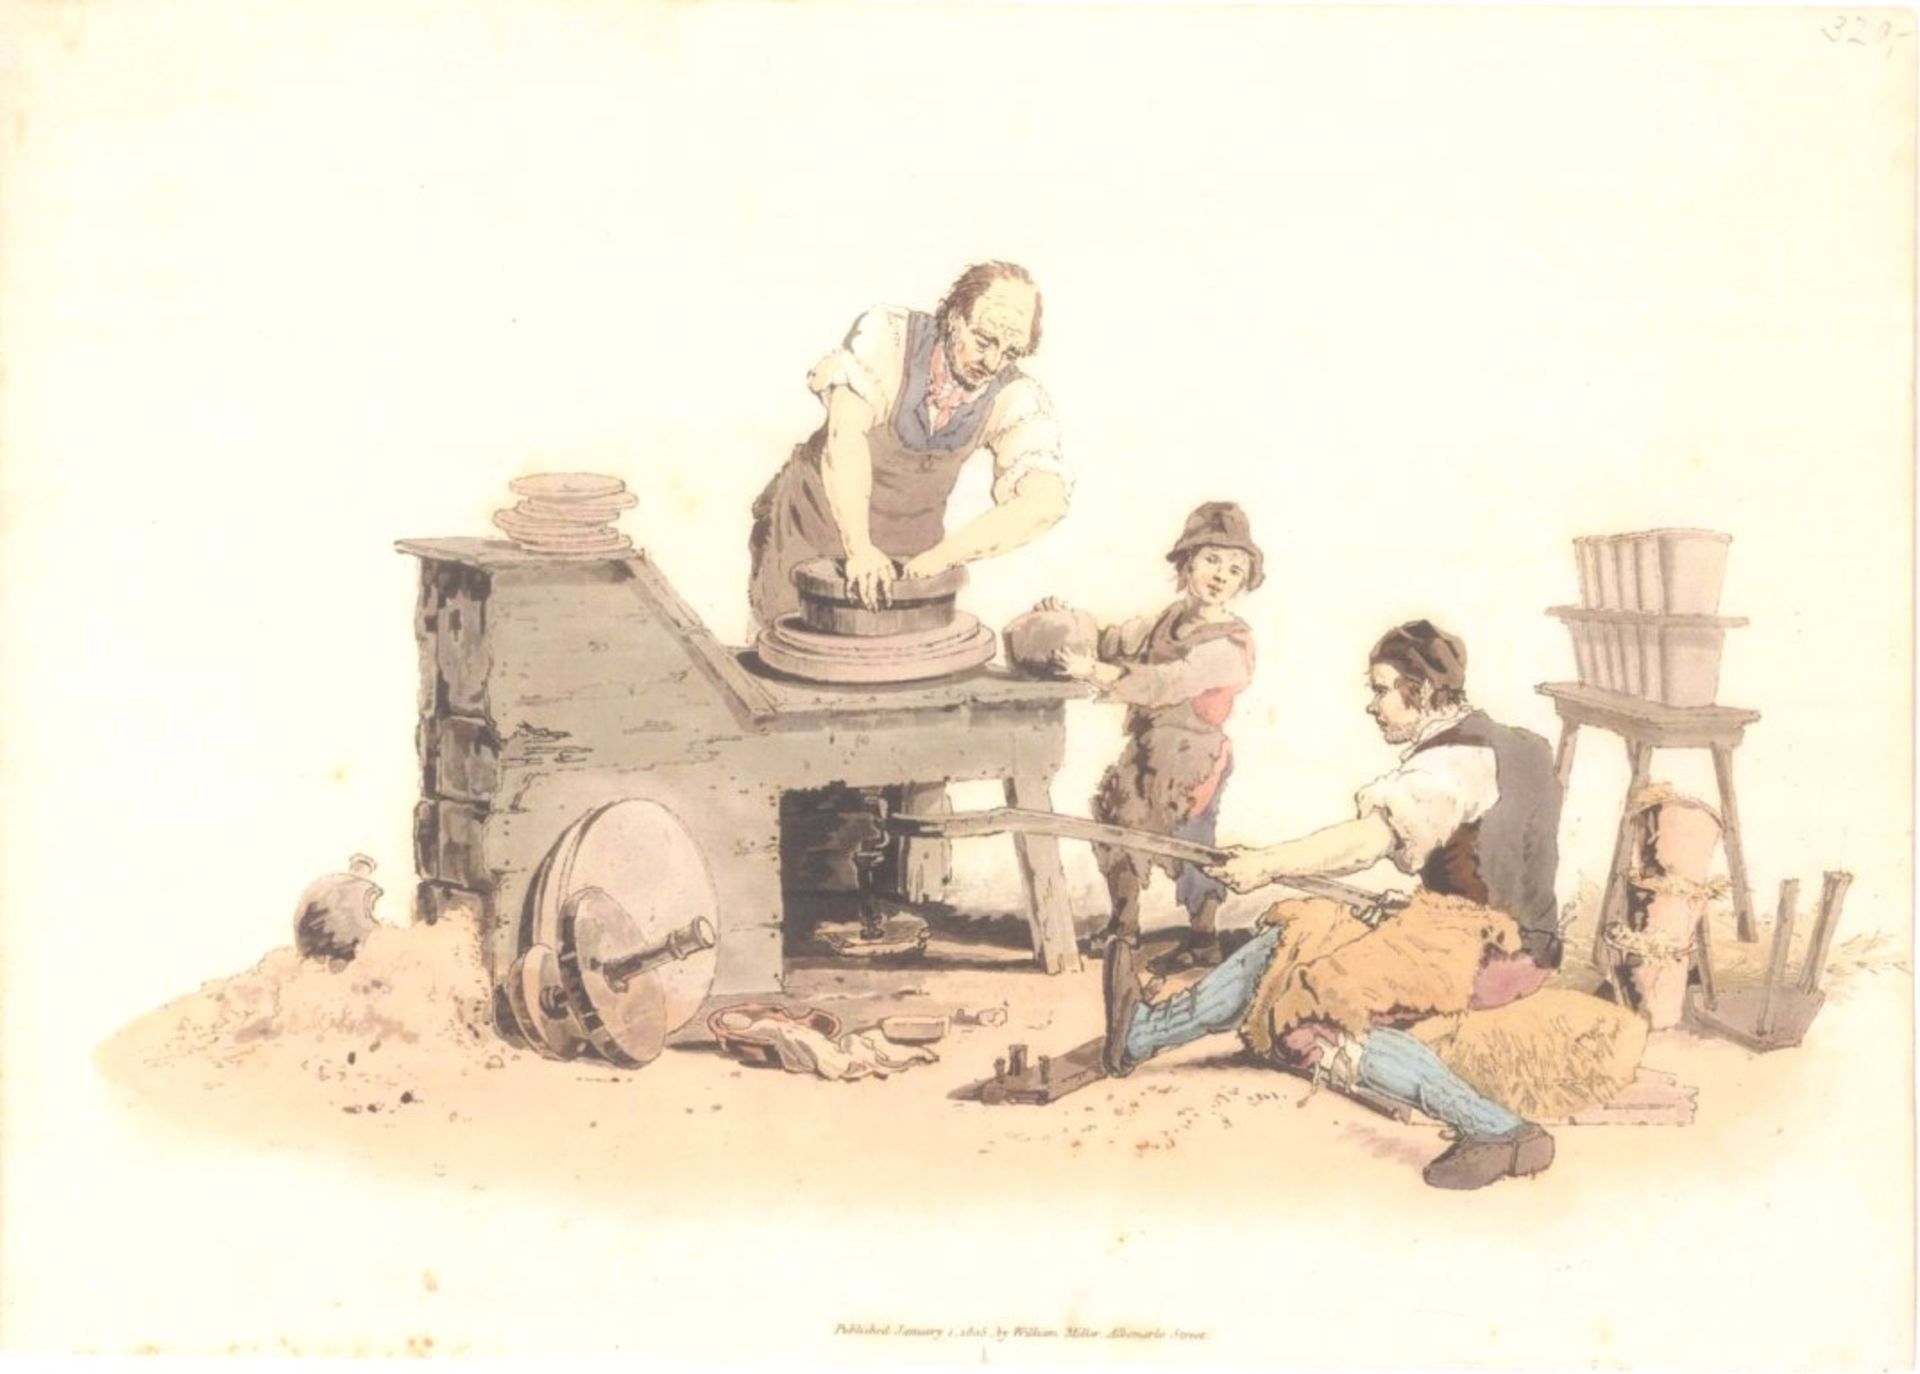 Farbaquatintaradierung, London bei William Miller 1805Berufe: Schmied mit Gehilfen bei der Arbeit,